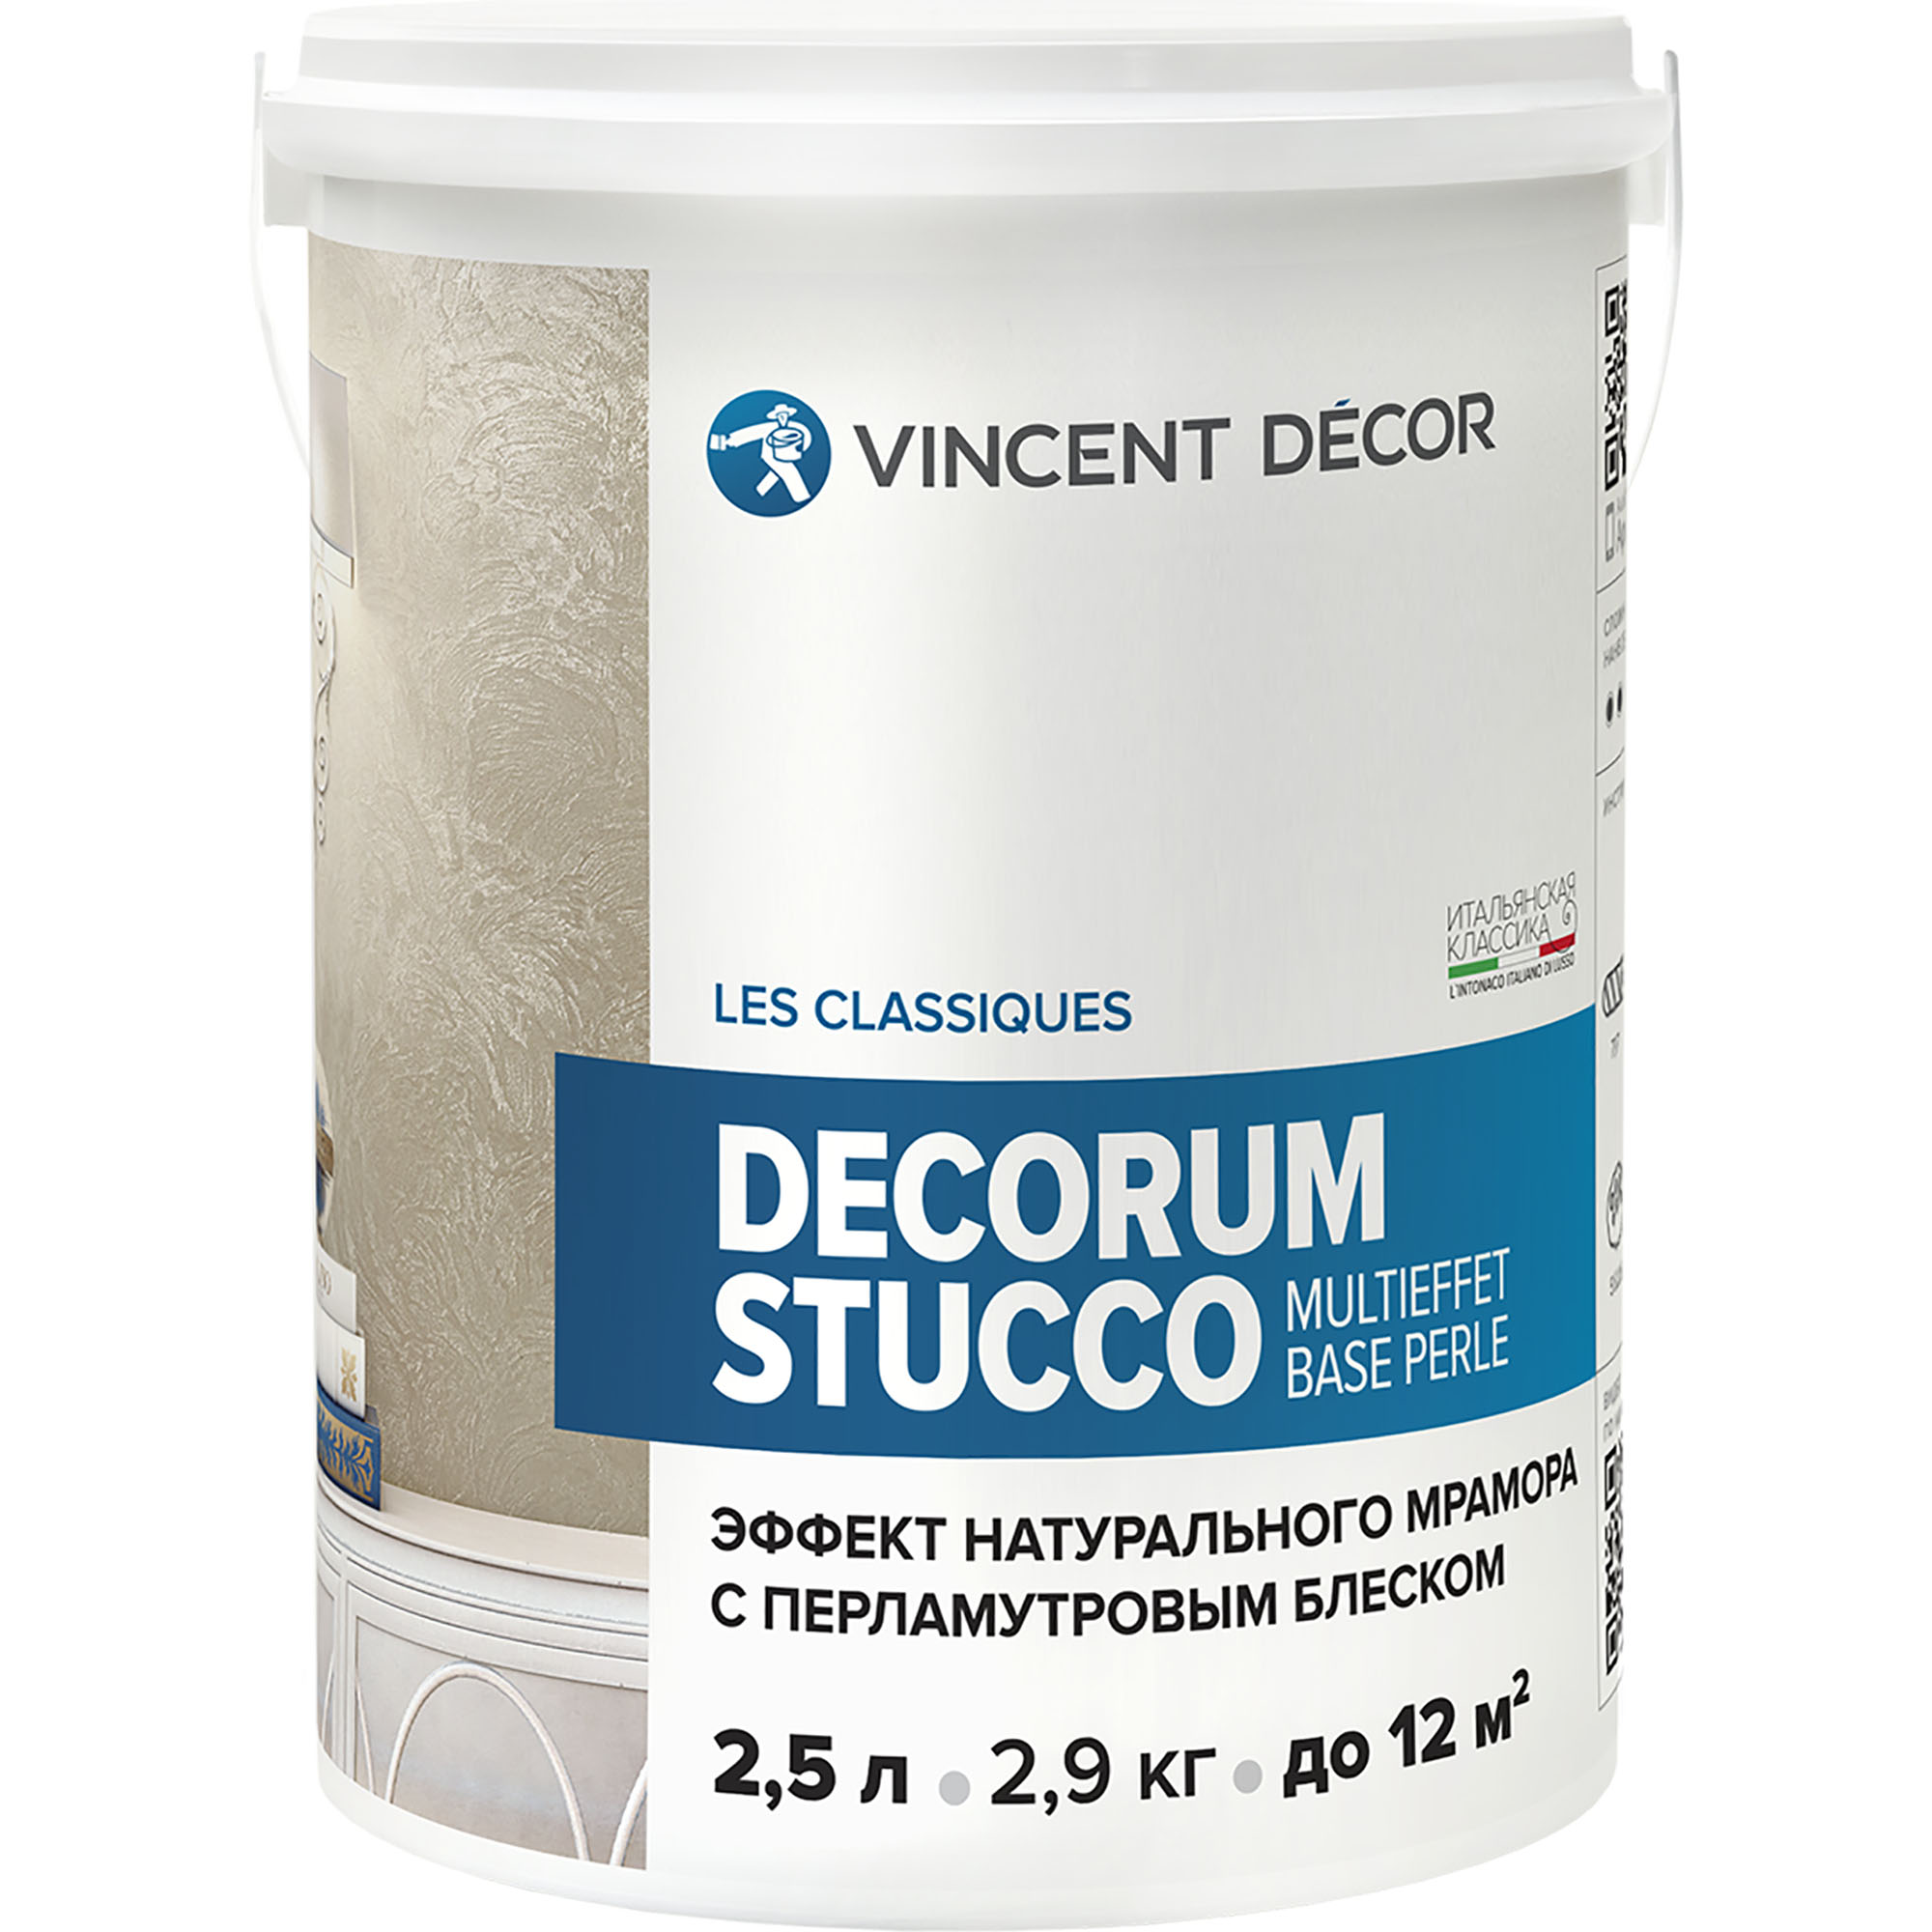 Декоративное покрытие для стен Vincent Decor Decorum Stucco Multieffet base Perle c эффектом натурального мрамора с перламутровым блеском 2,5 л покрытие структурное vincent decorum multieffet 18кг